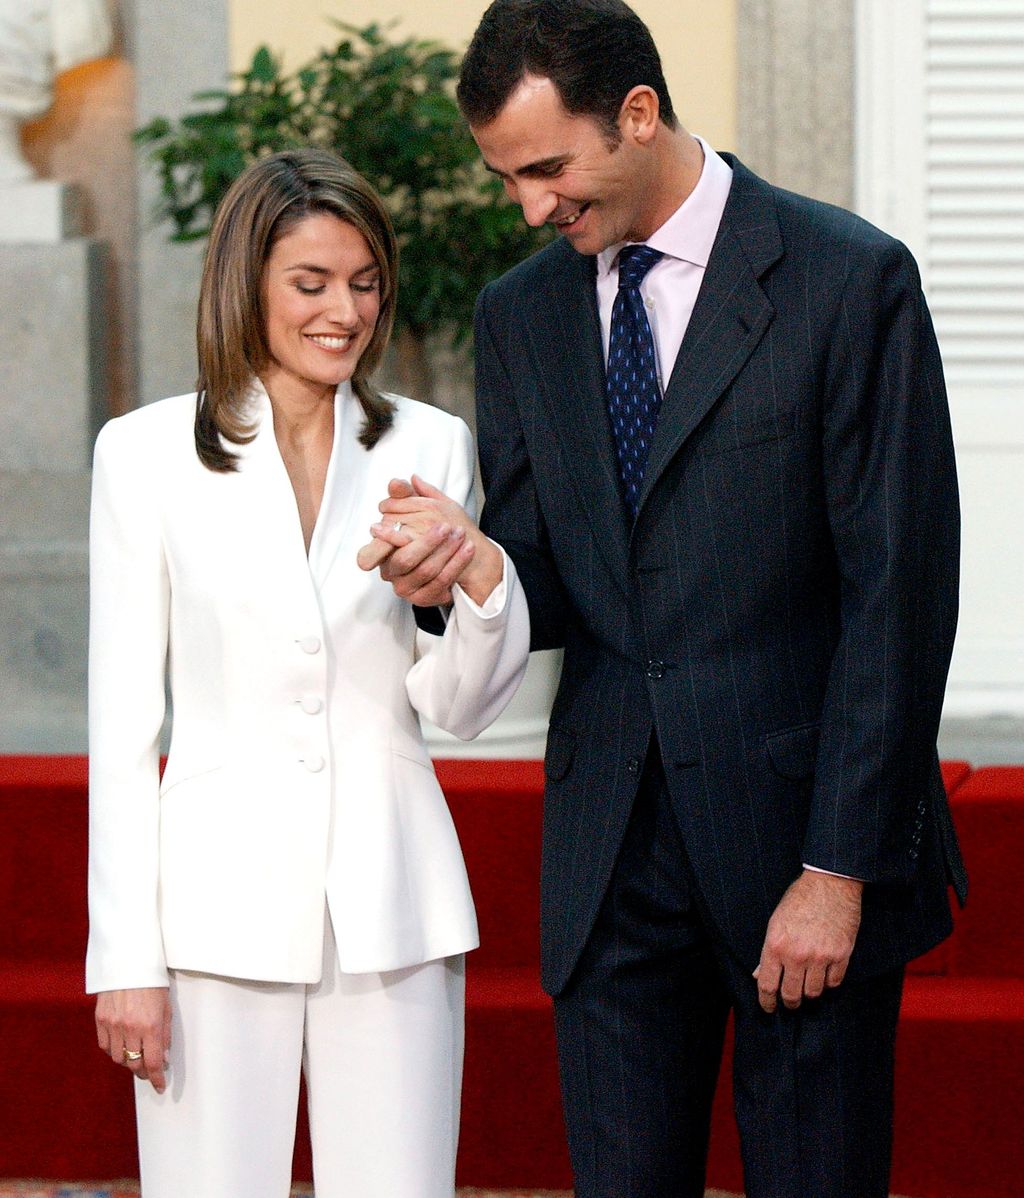 Felipe y Letizia anunciaron su compromiso ante los medios un 6 de noviembre de 2003